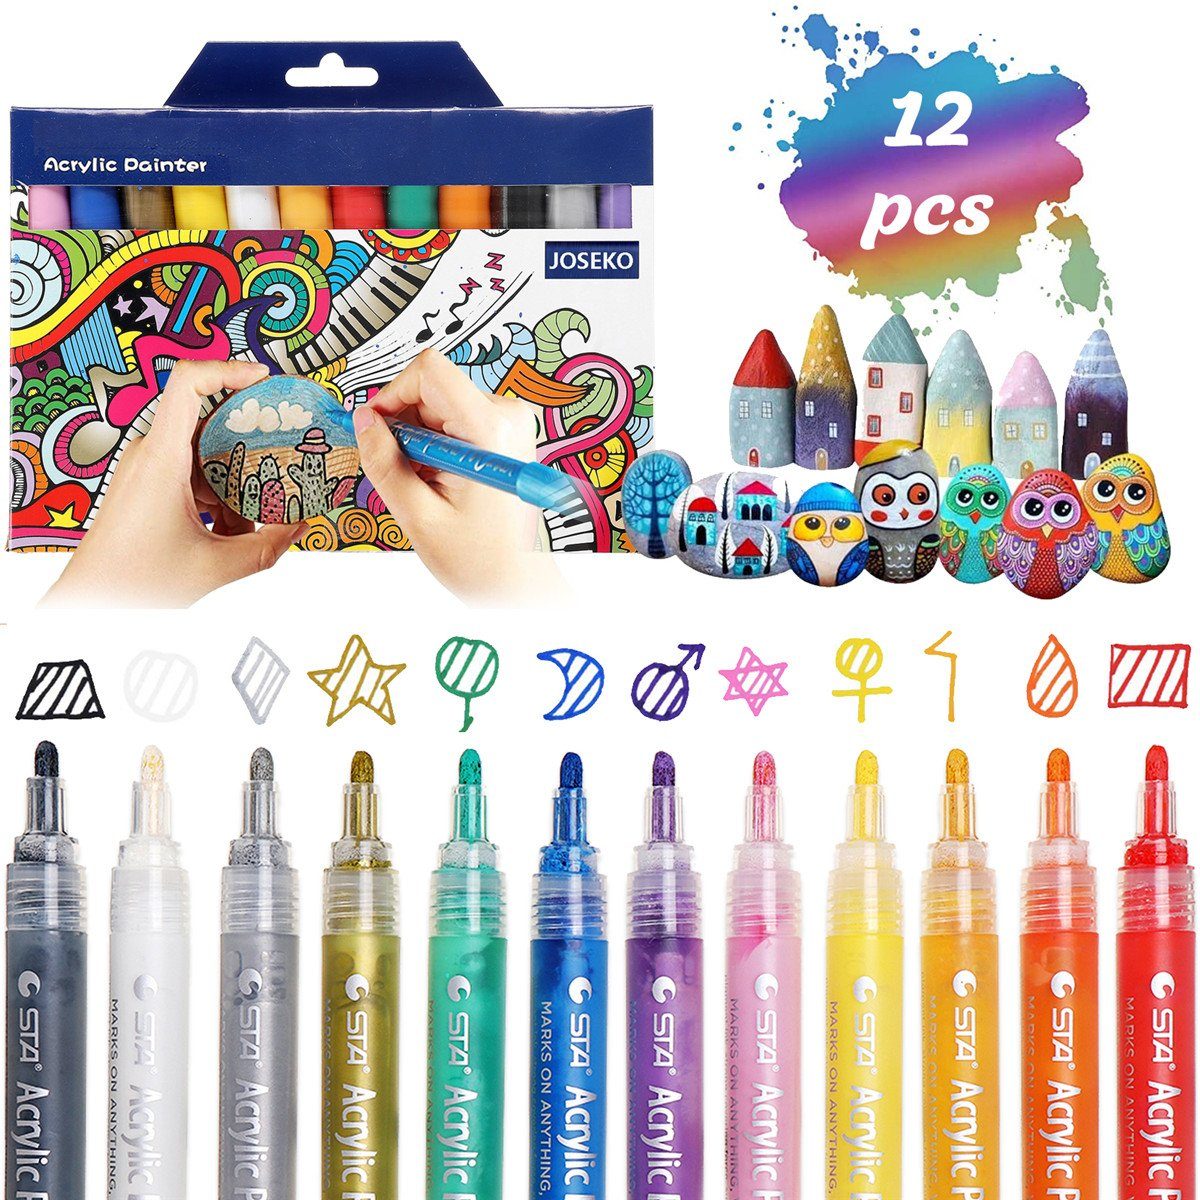 JOSEKO Filzstift Riesiges Acrylzeichnen! Kreatives Stifte, Acryl-Stifte Premium 36-teiliges Set, Hochwertige